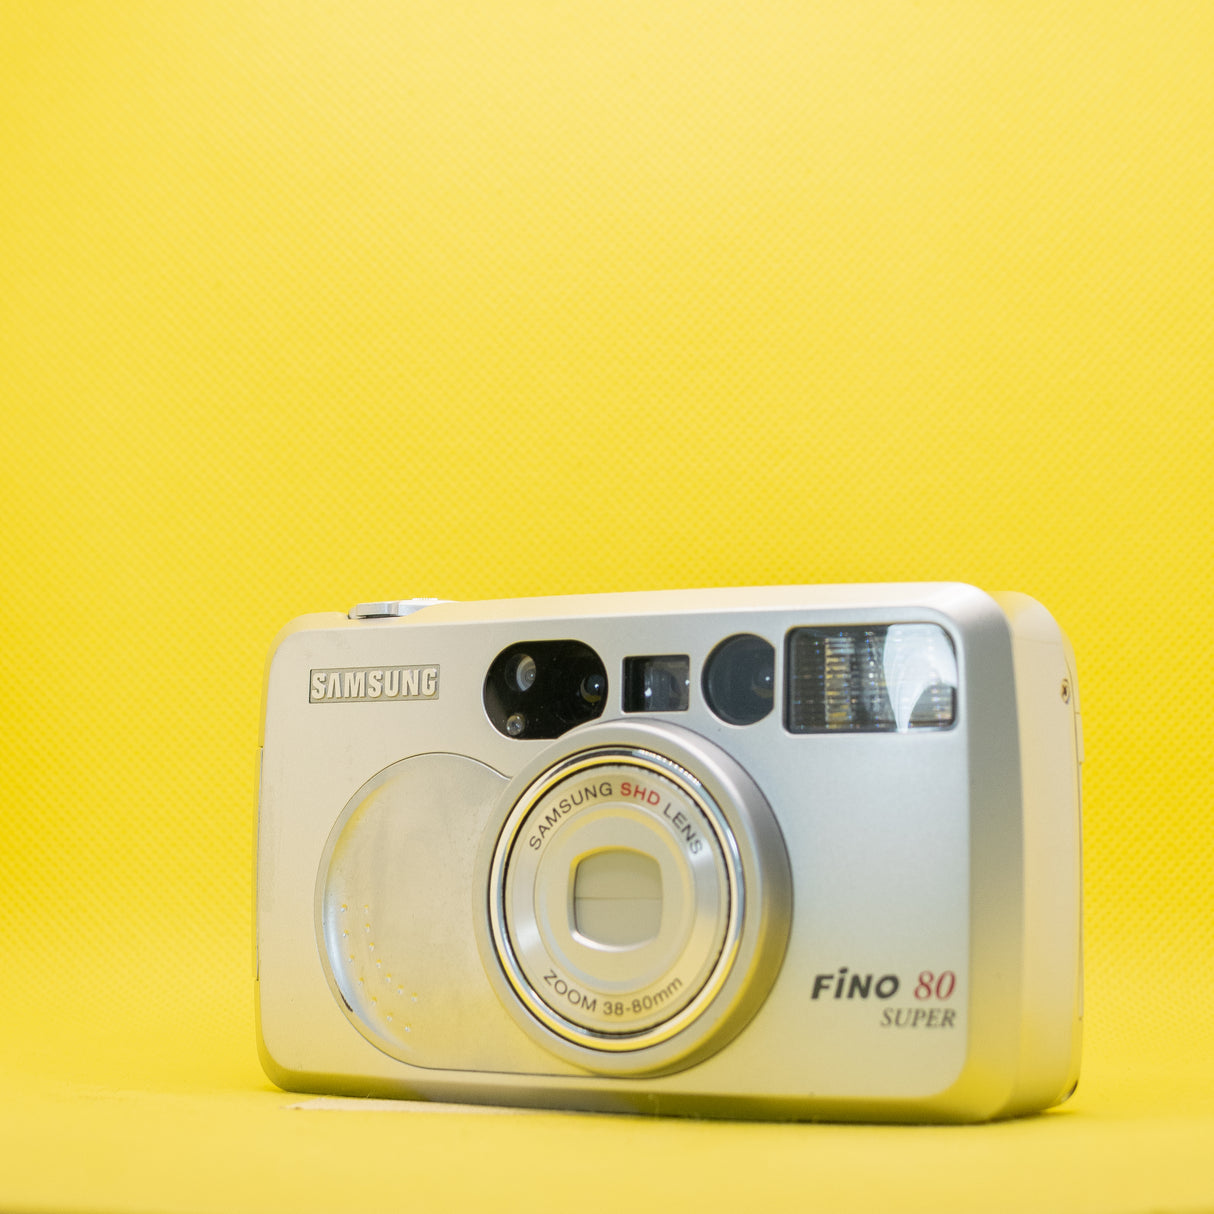 Samsung Fino 80 Super - 35mm Film Camera